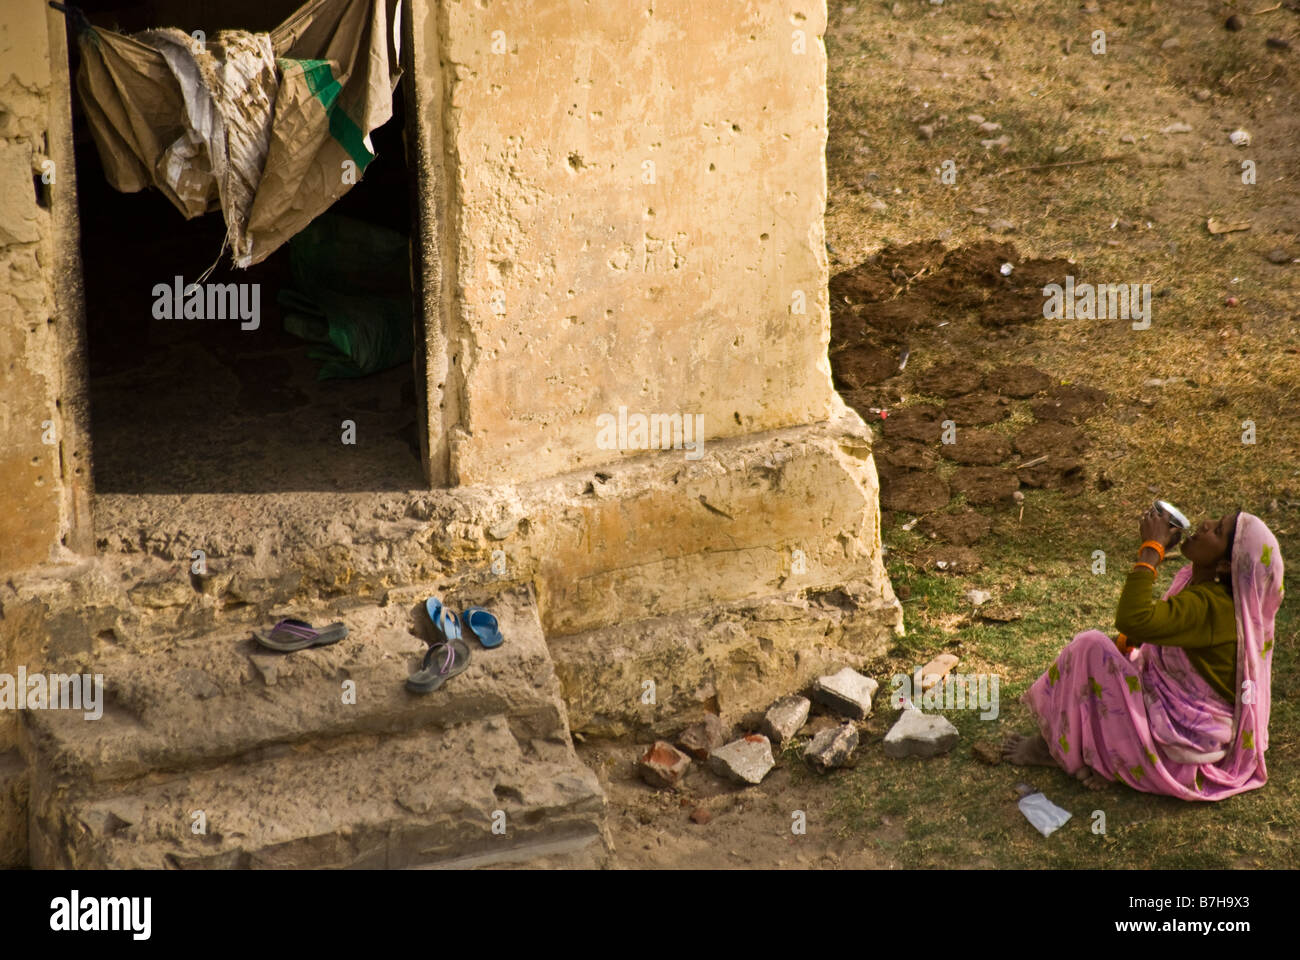 Una donna di bere quello che è probabilmente l'acqua sporca al di fuori del suo live-in shack, un minuscolo 4x4 capannone di utilità. Foto Stock